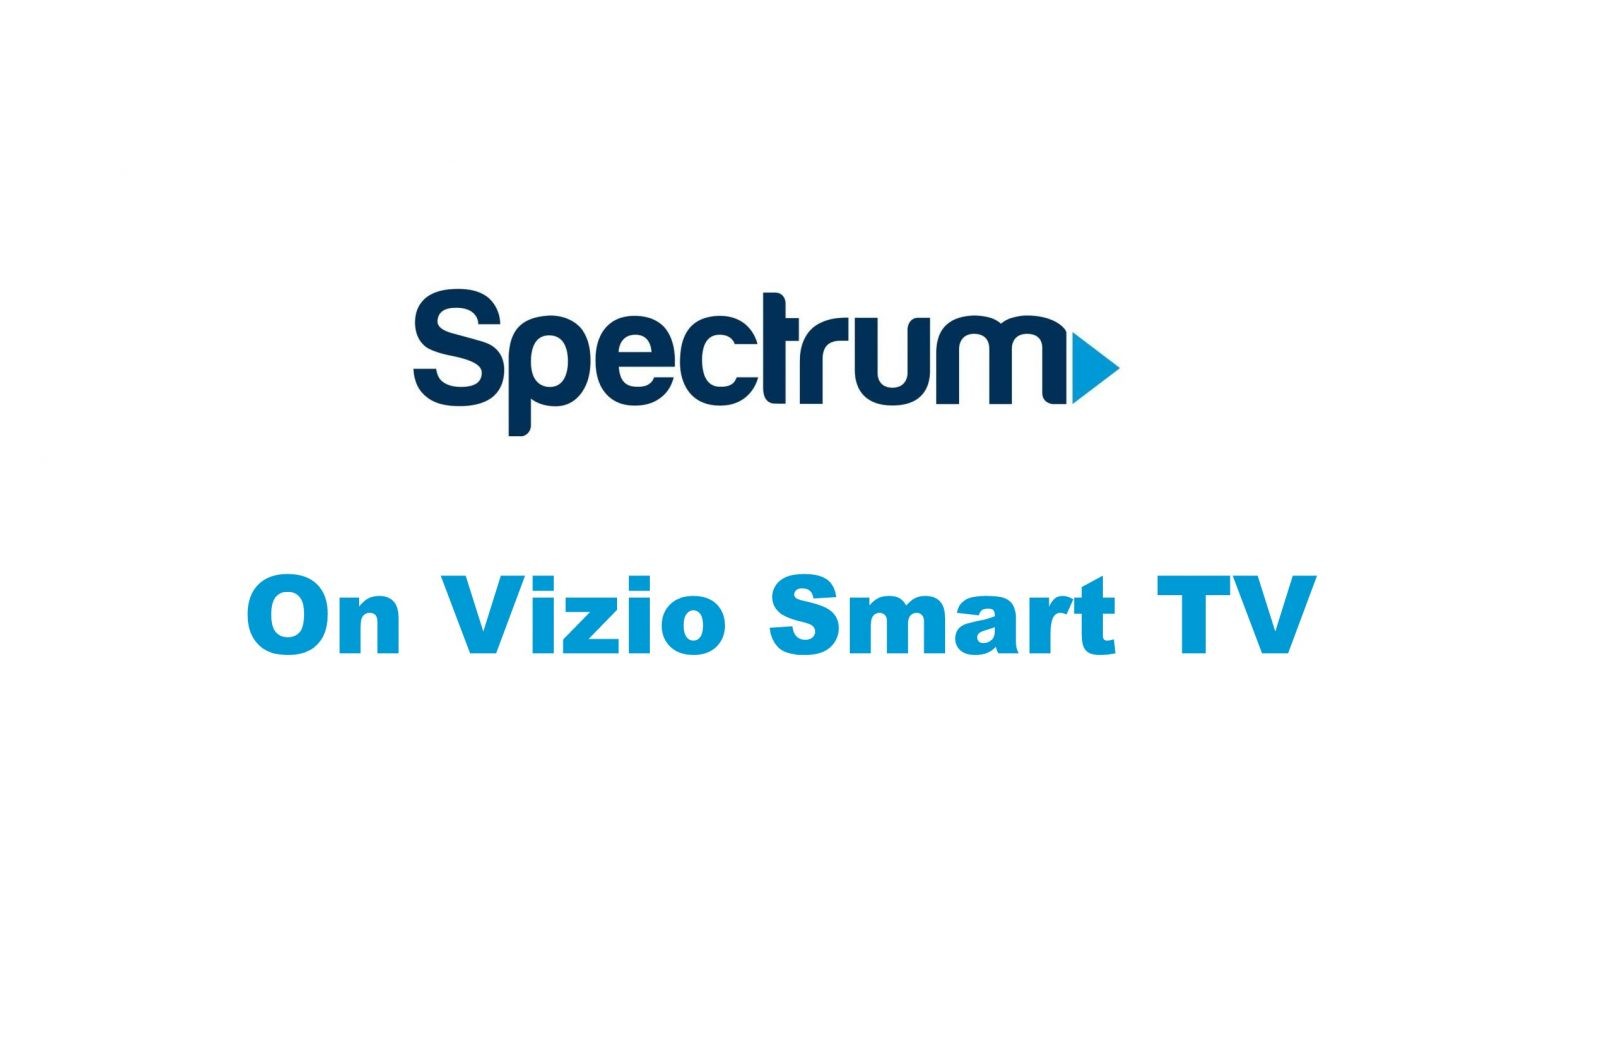 كيفية تنزيل تطبيق Spectrum TV على Vizio Smart TV